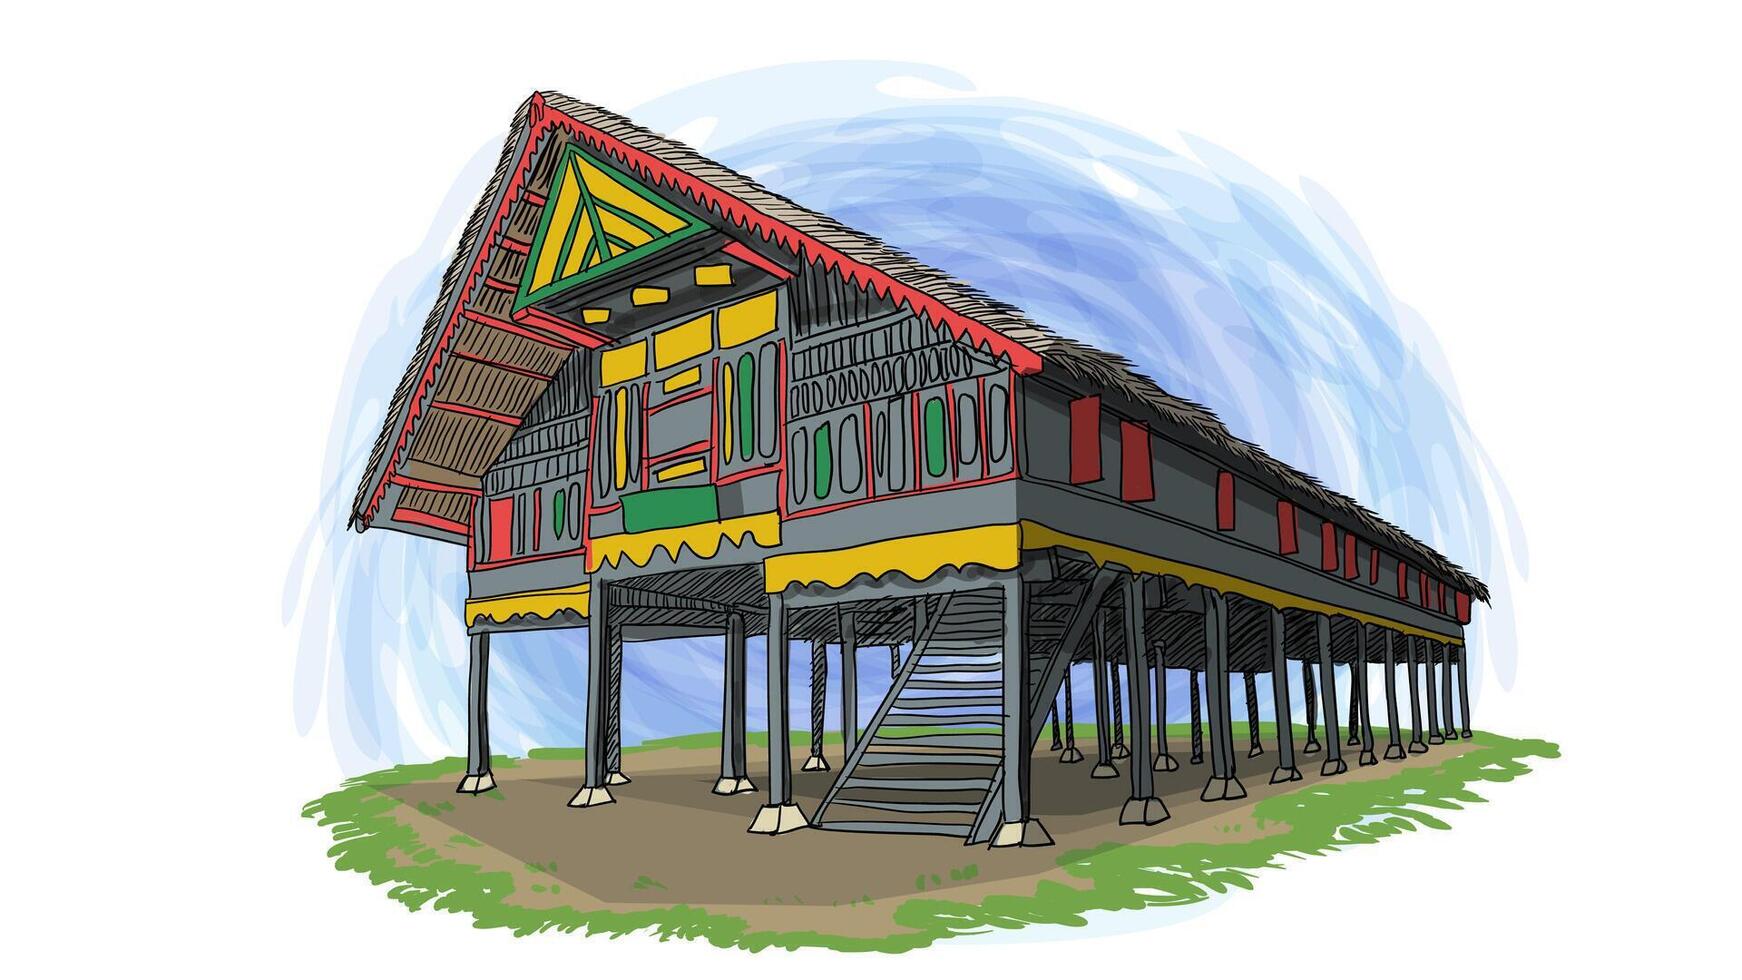 rumoh aceh traditionnel Indonésie maison dessin animé main tiré illustration vecteur